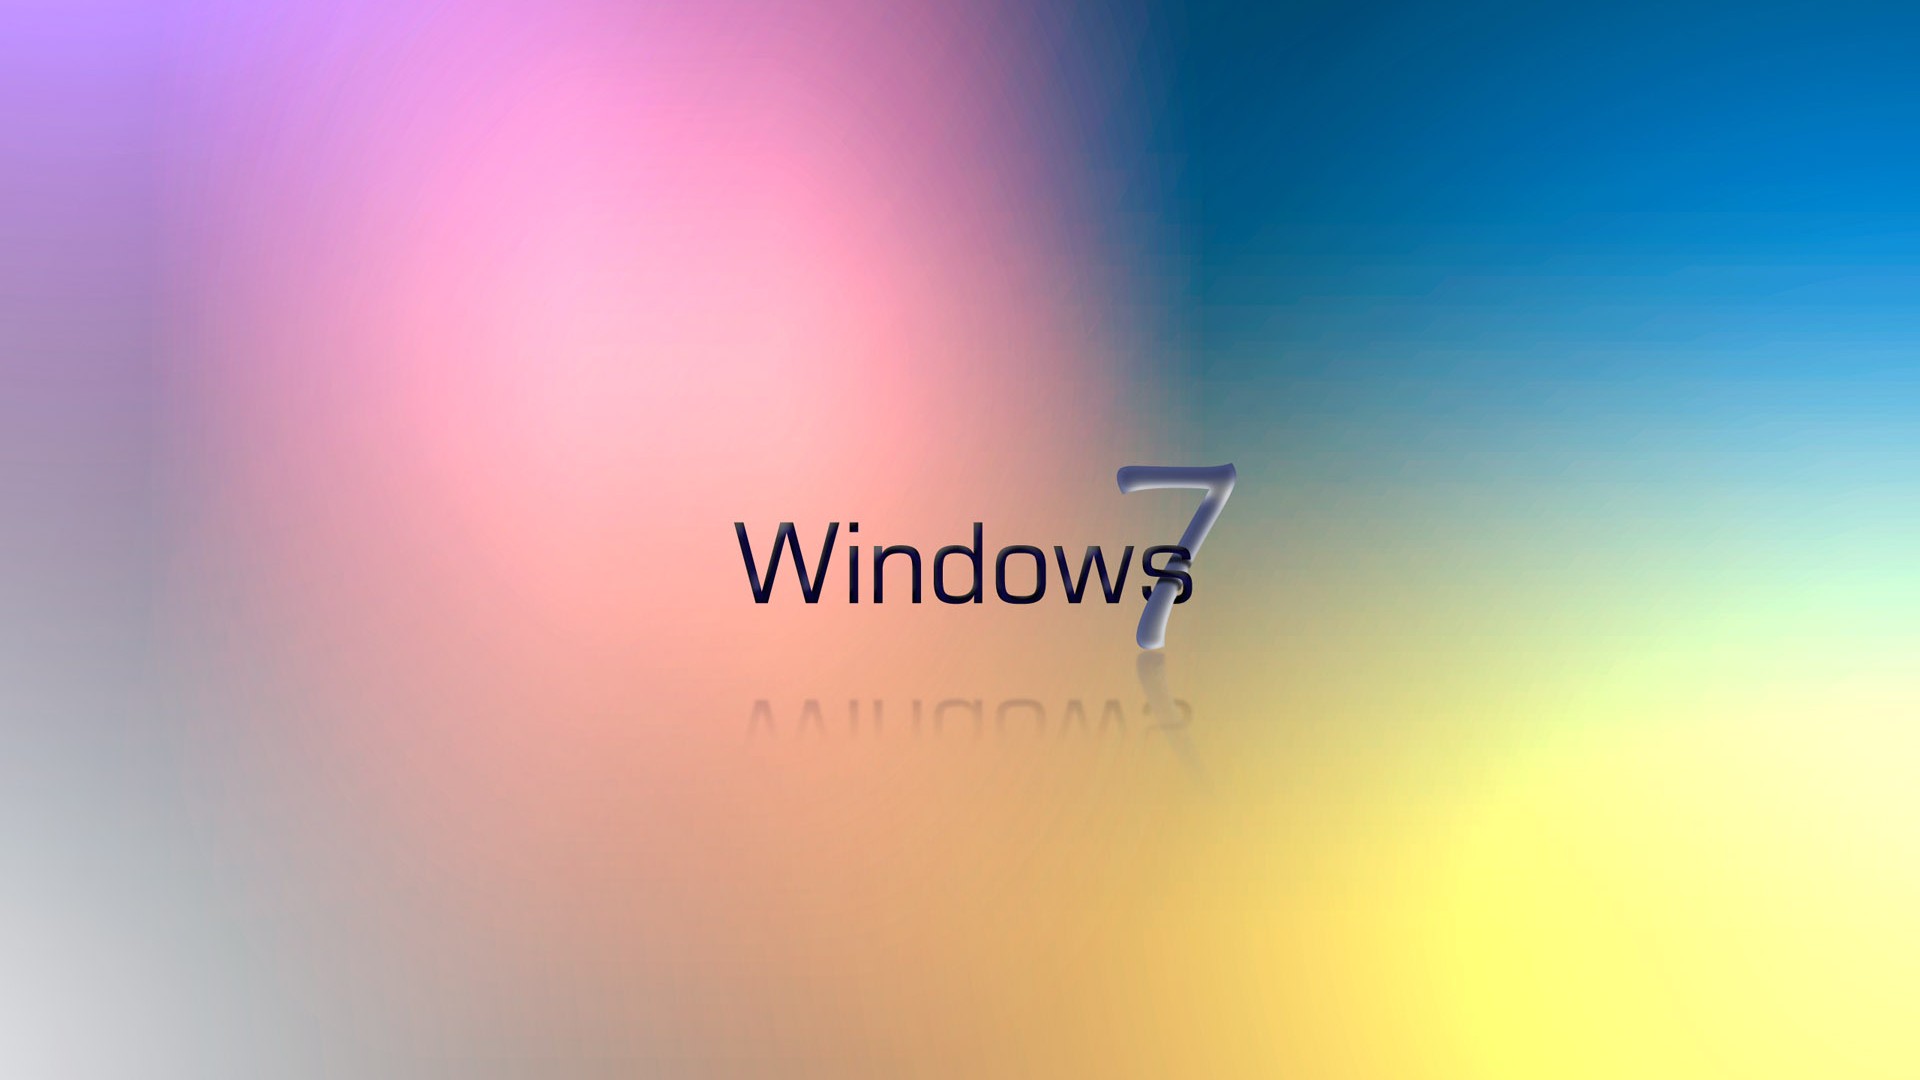 Windows7 Fond d'écran thème (1) #12 - 1920x1080